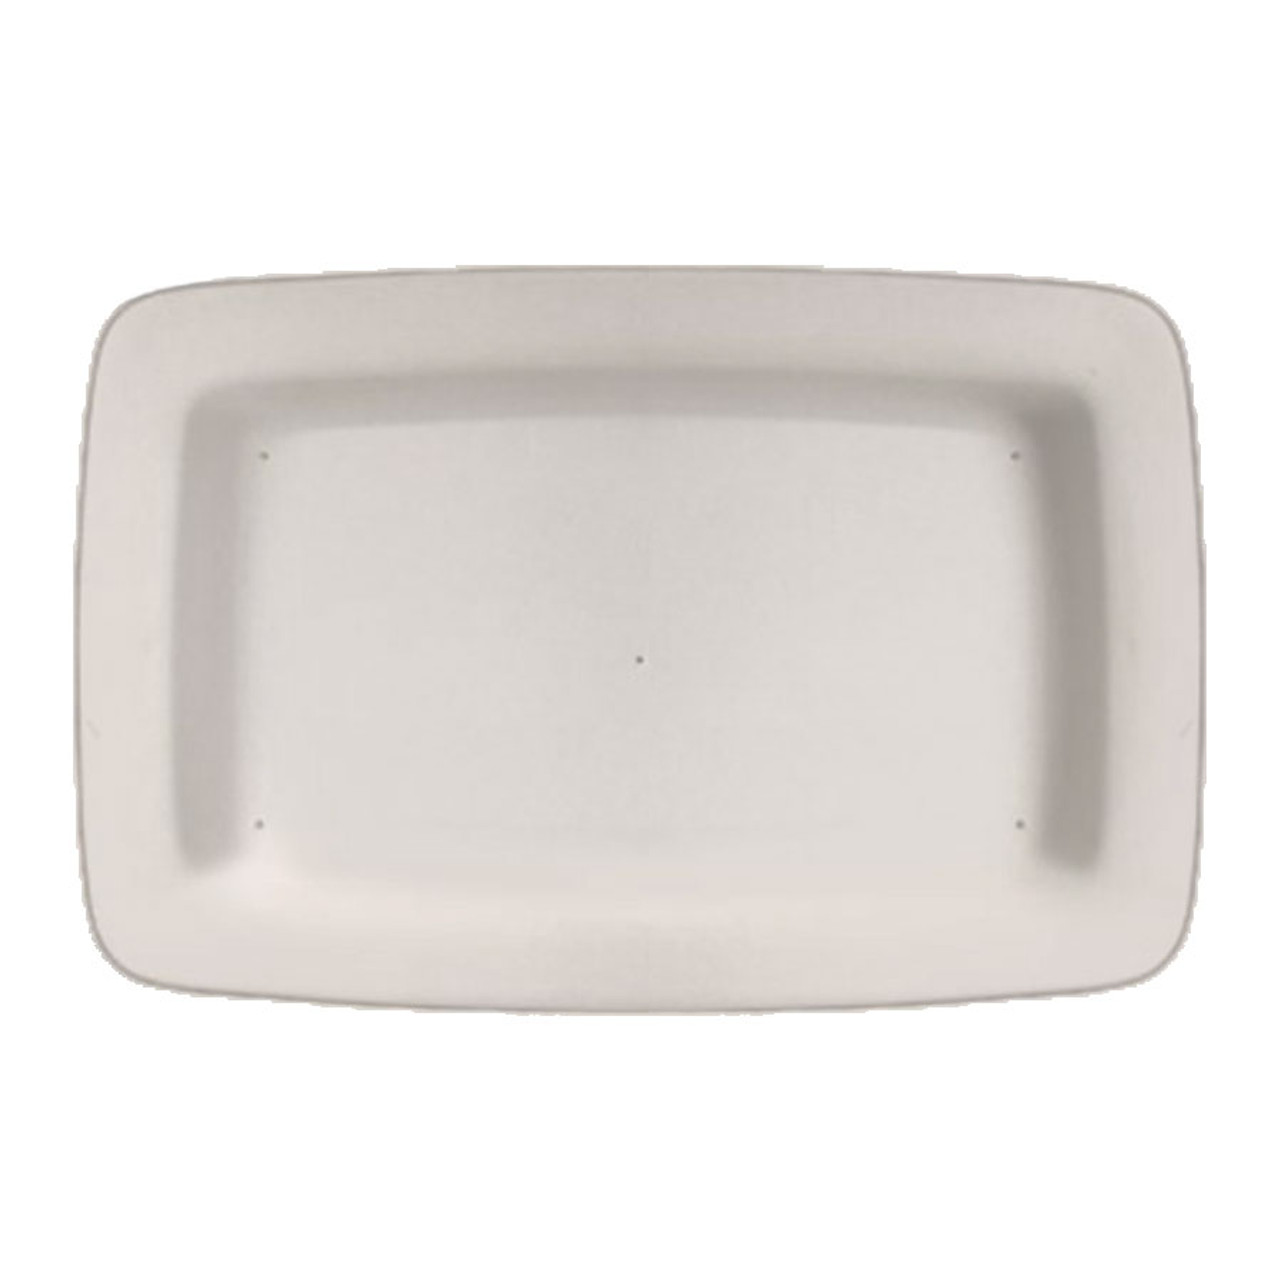 Soap Dish, 6 x 4 in (15 x 10 cm), Slumping Mold